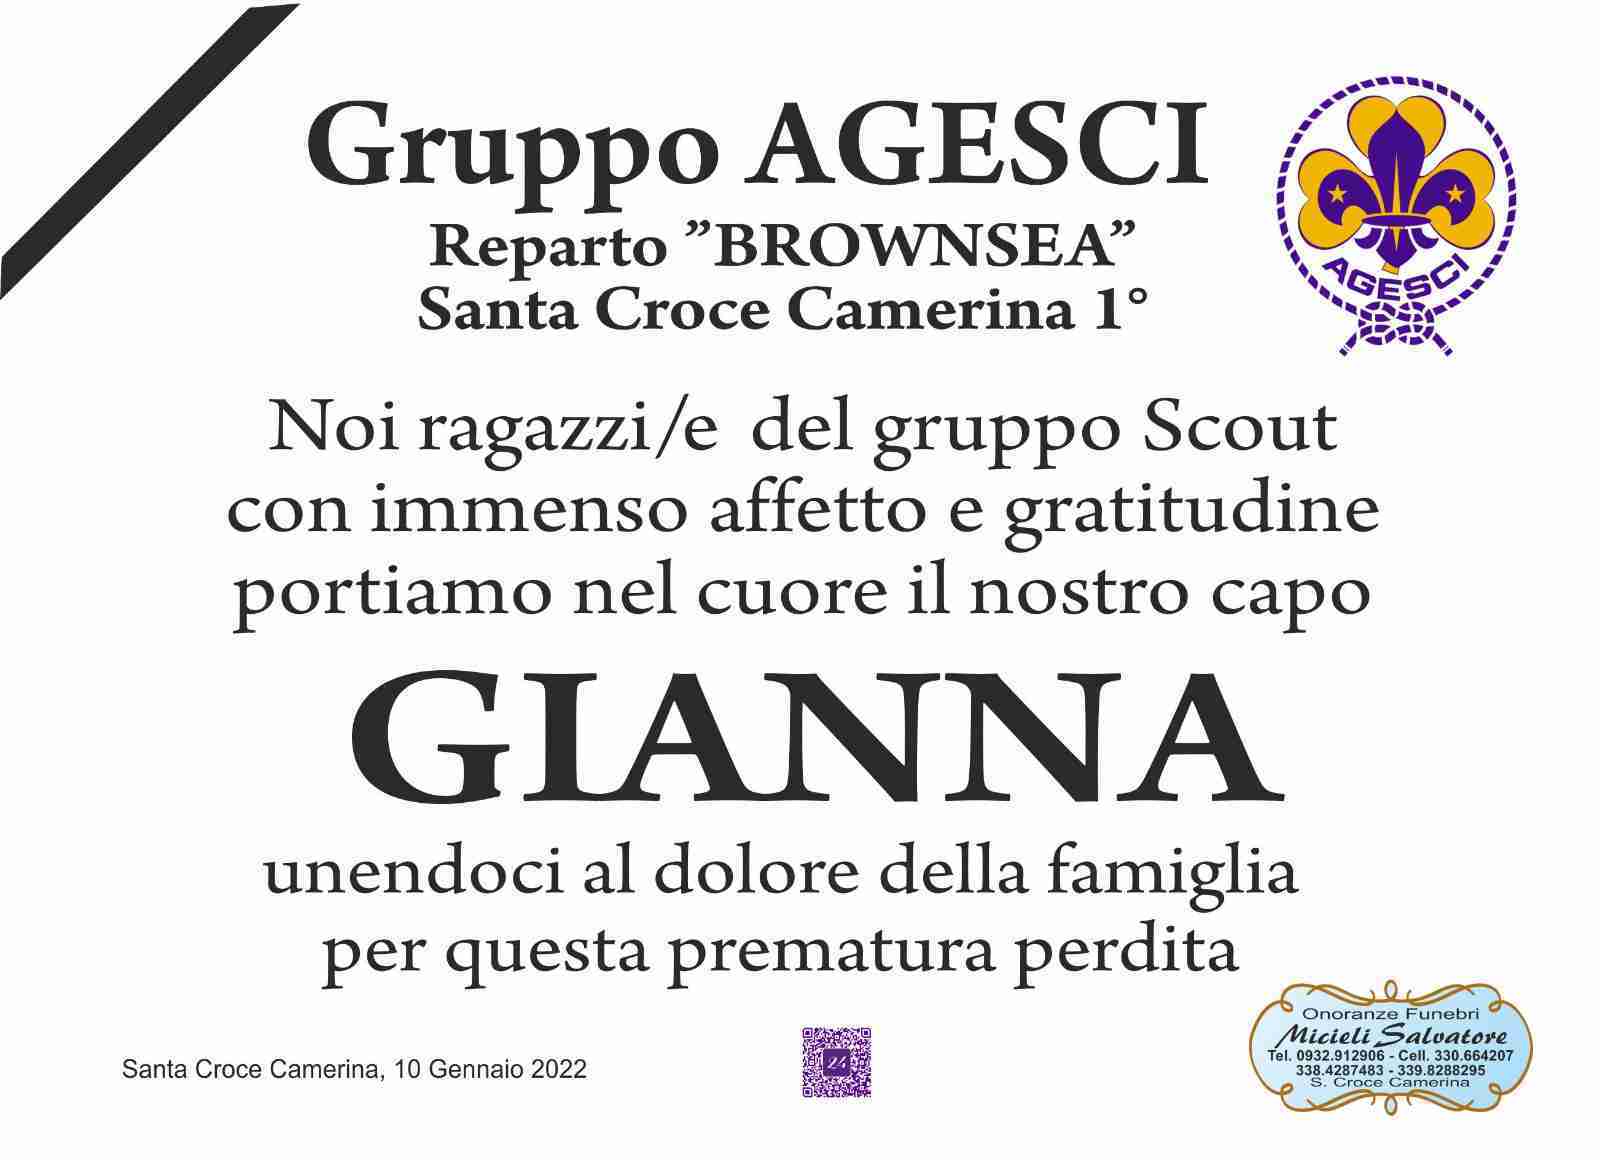 Gianna Scionti